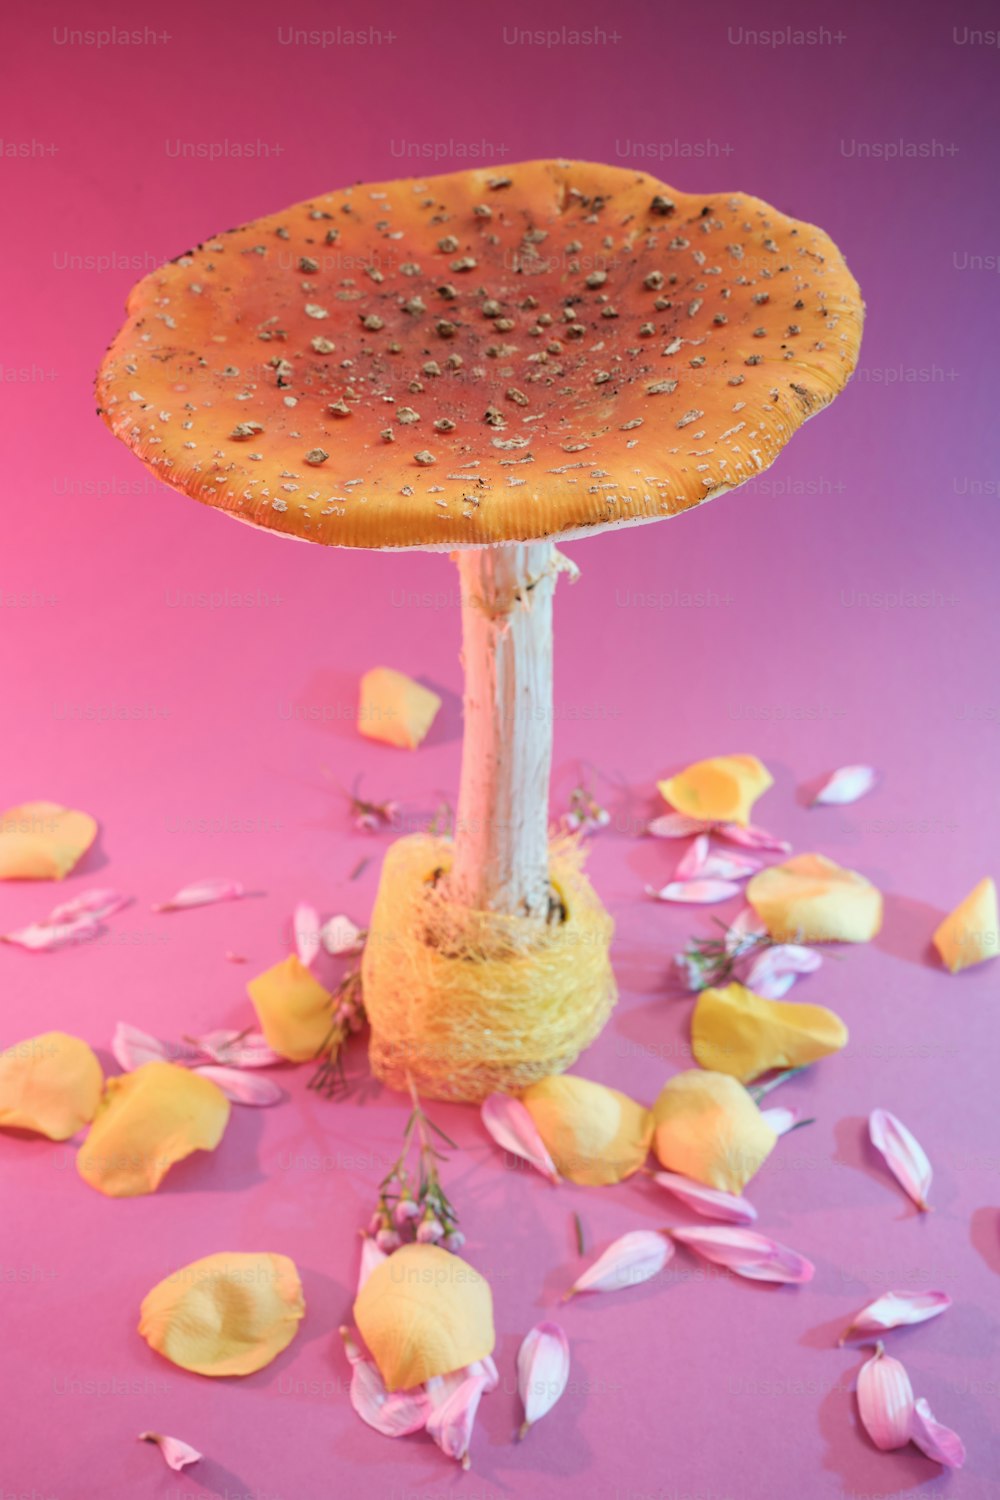 Un objeto en forma de hongo sentado encima de una superficie rosa